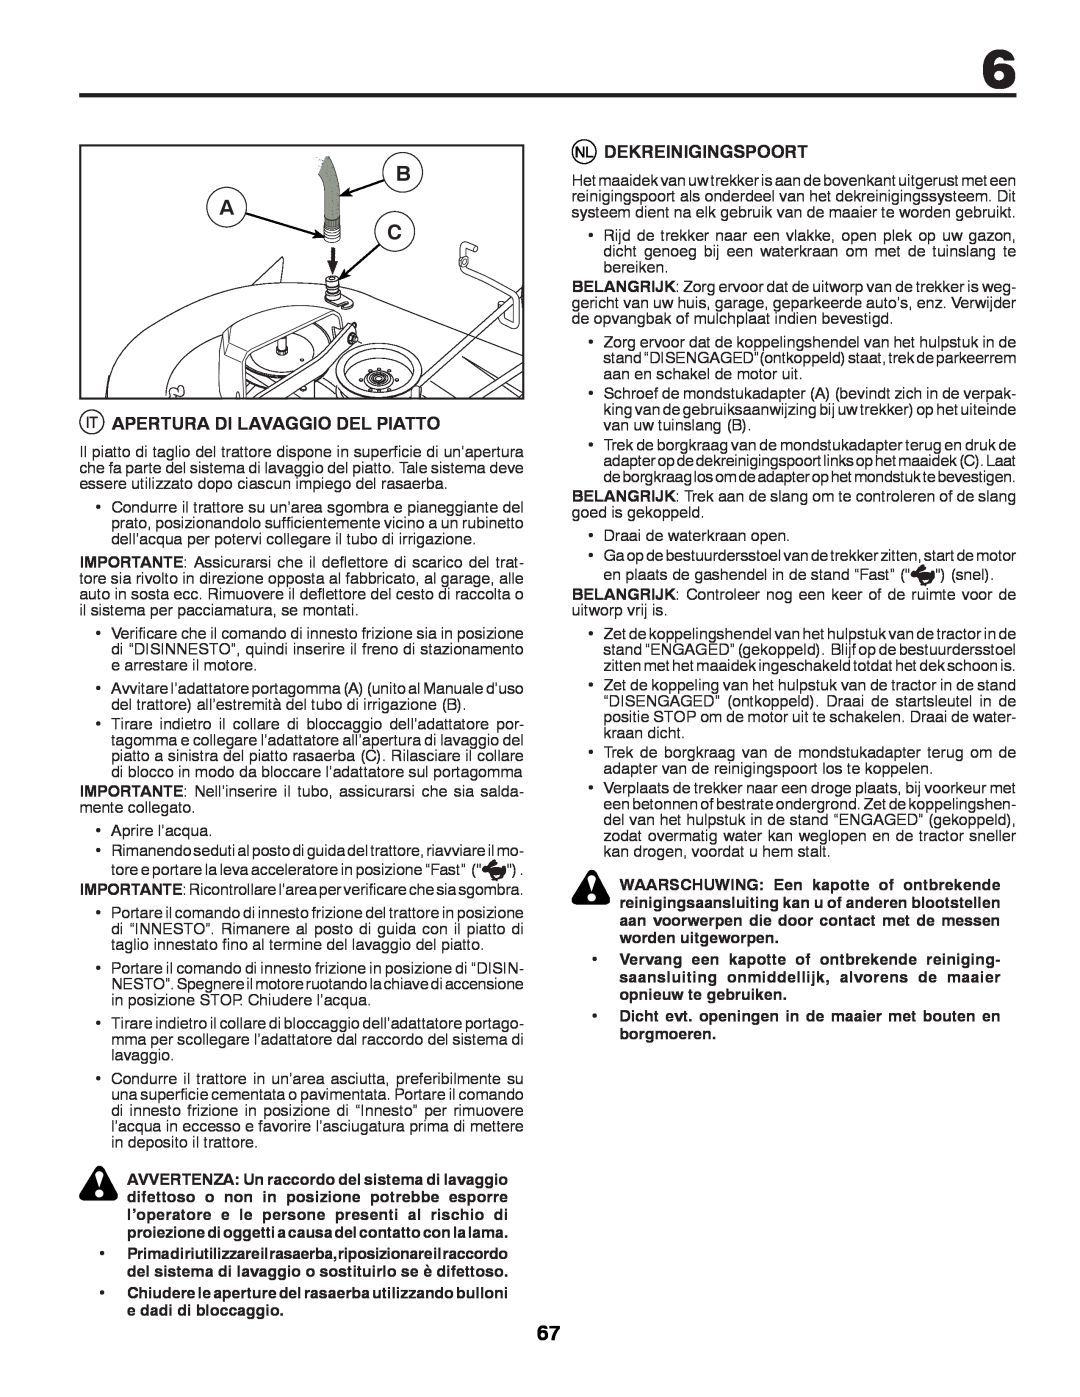 McCulloch 532 43 29-74, 96041009101 manual Apertura Di Lavaggio Del Piatto, Dekreinigingspoort 